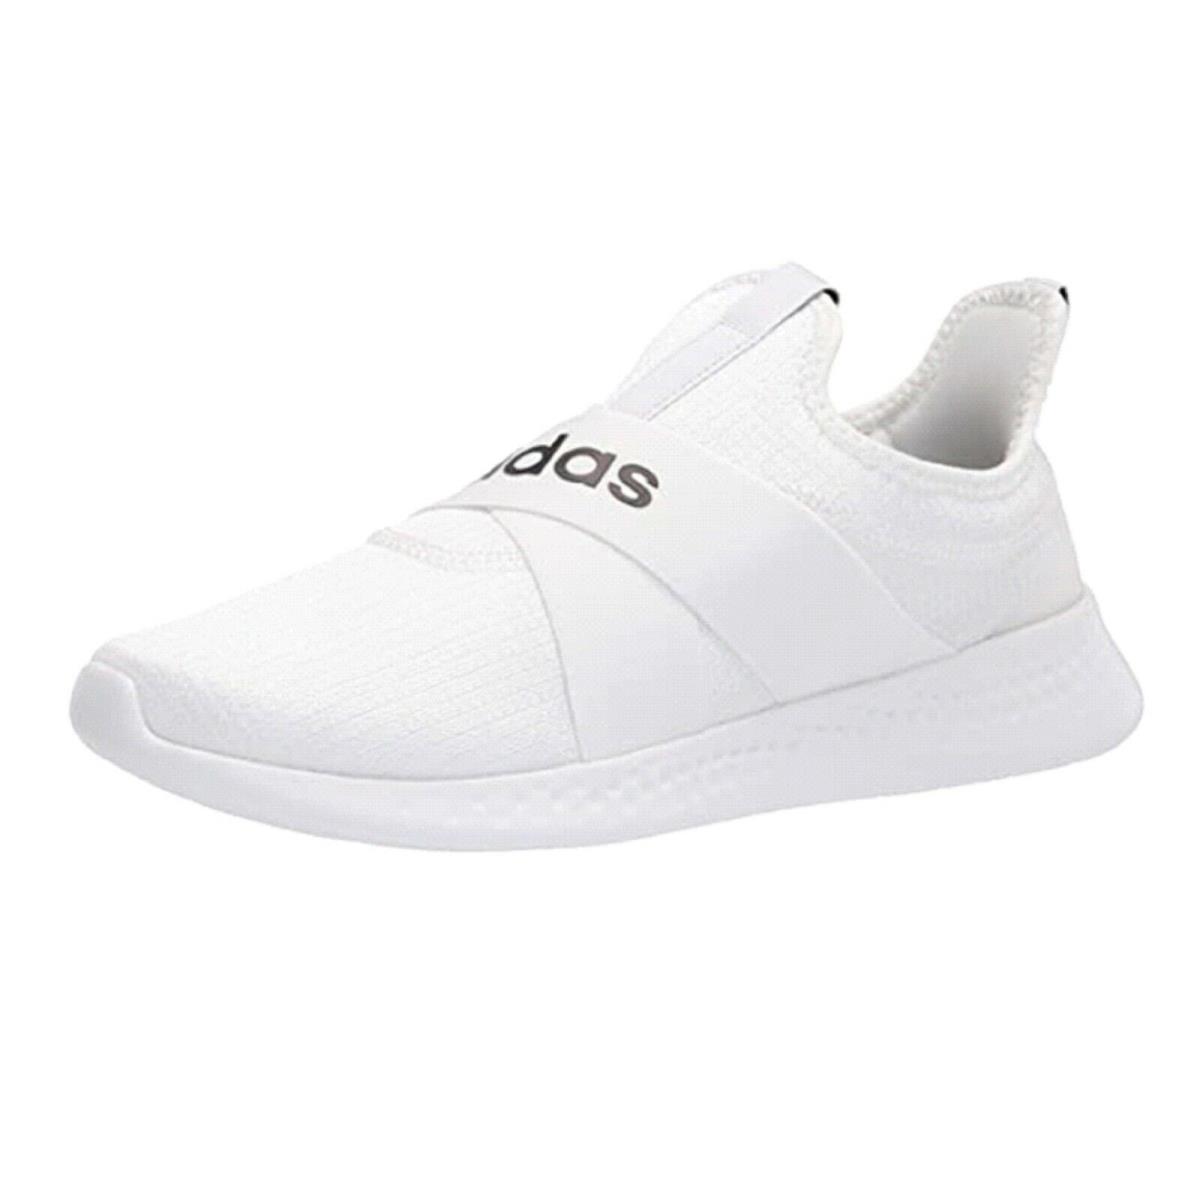 Adidas Women`s Puremotion Adapt Running Shoe White/Black/Dove Grey